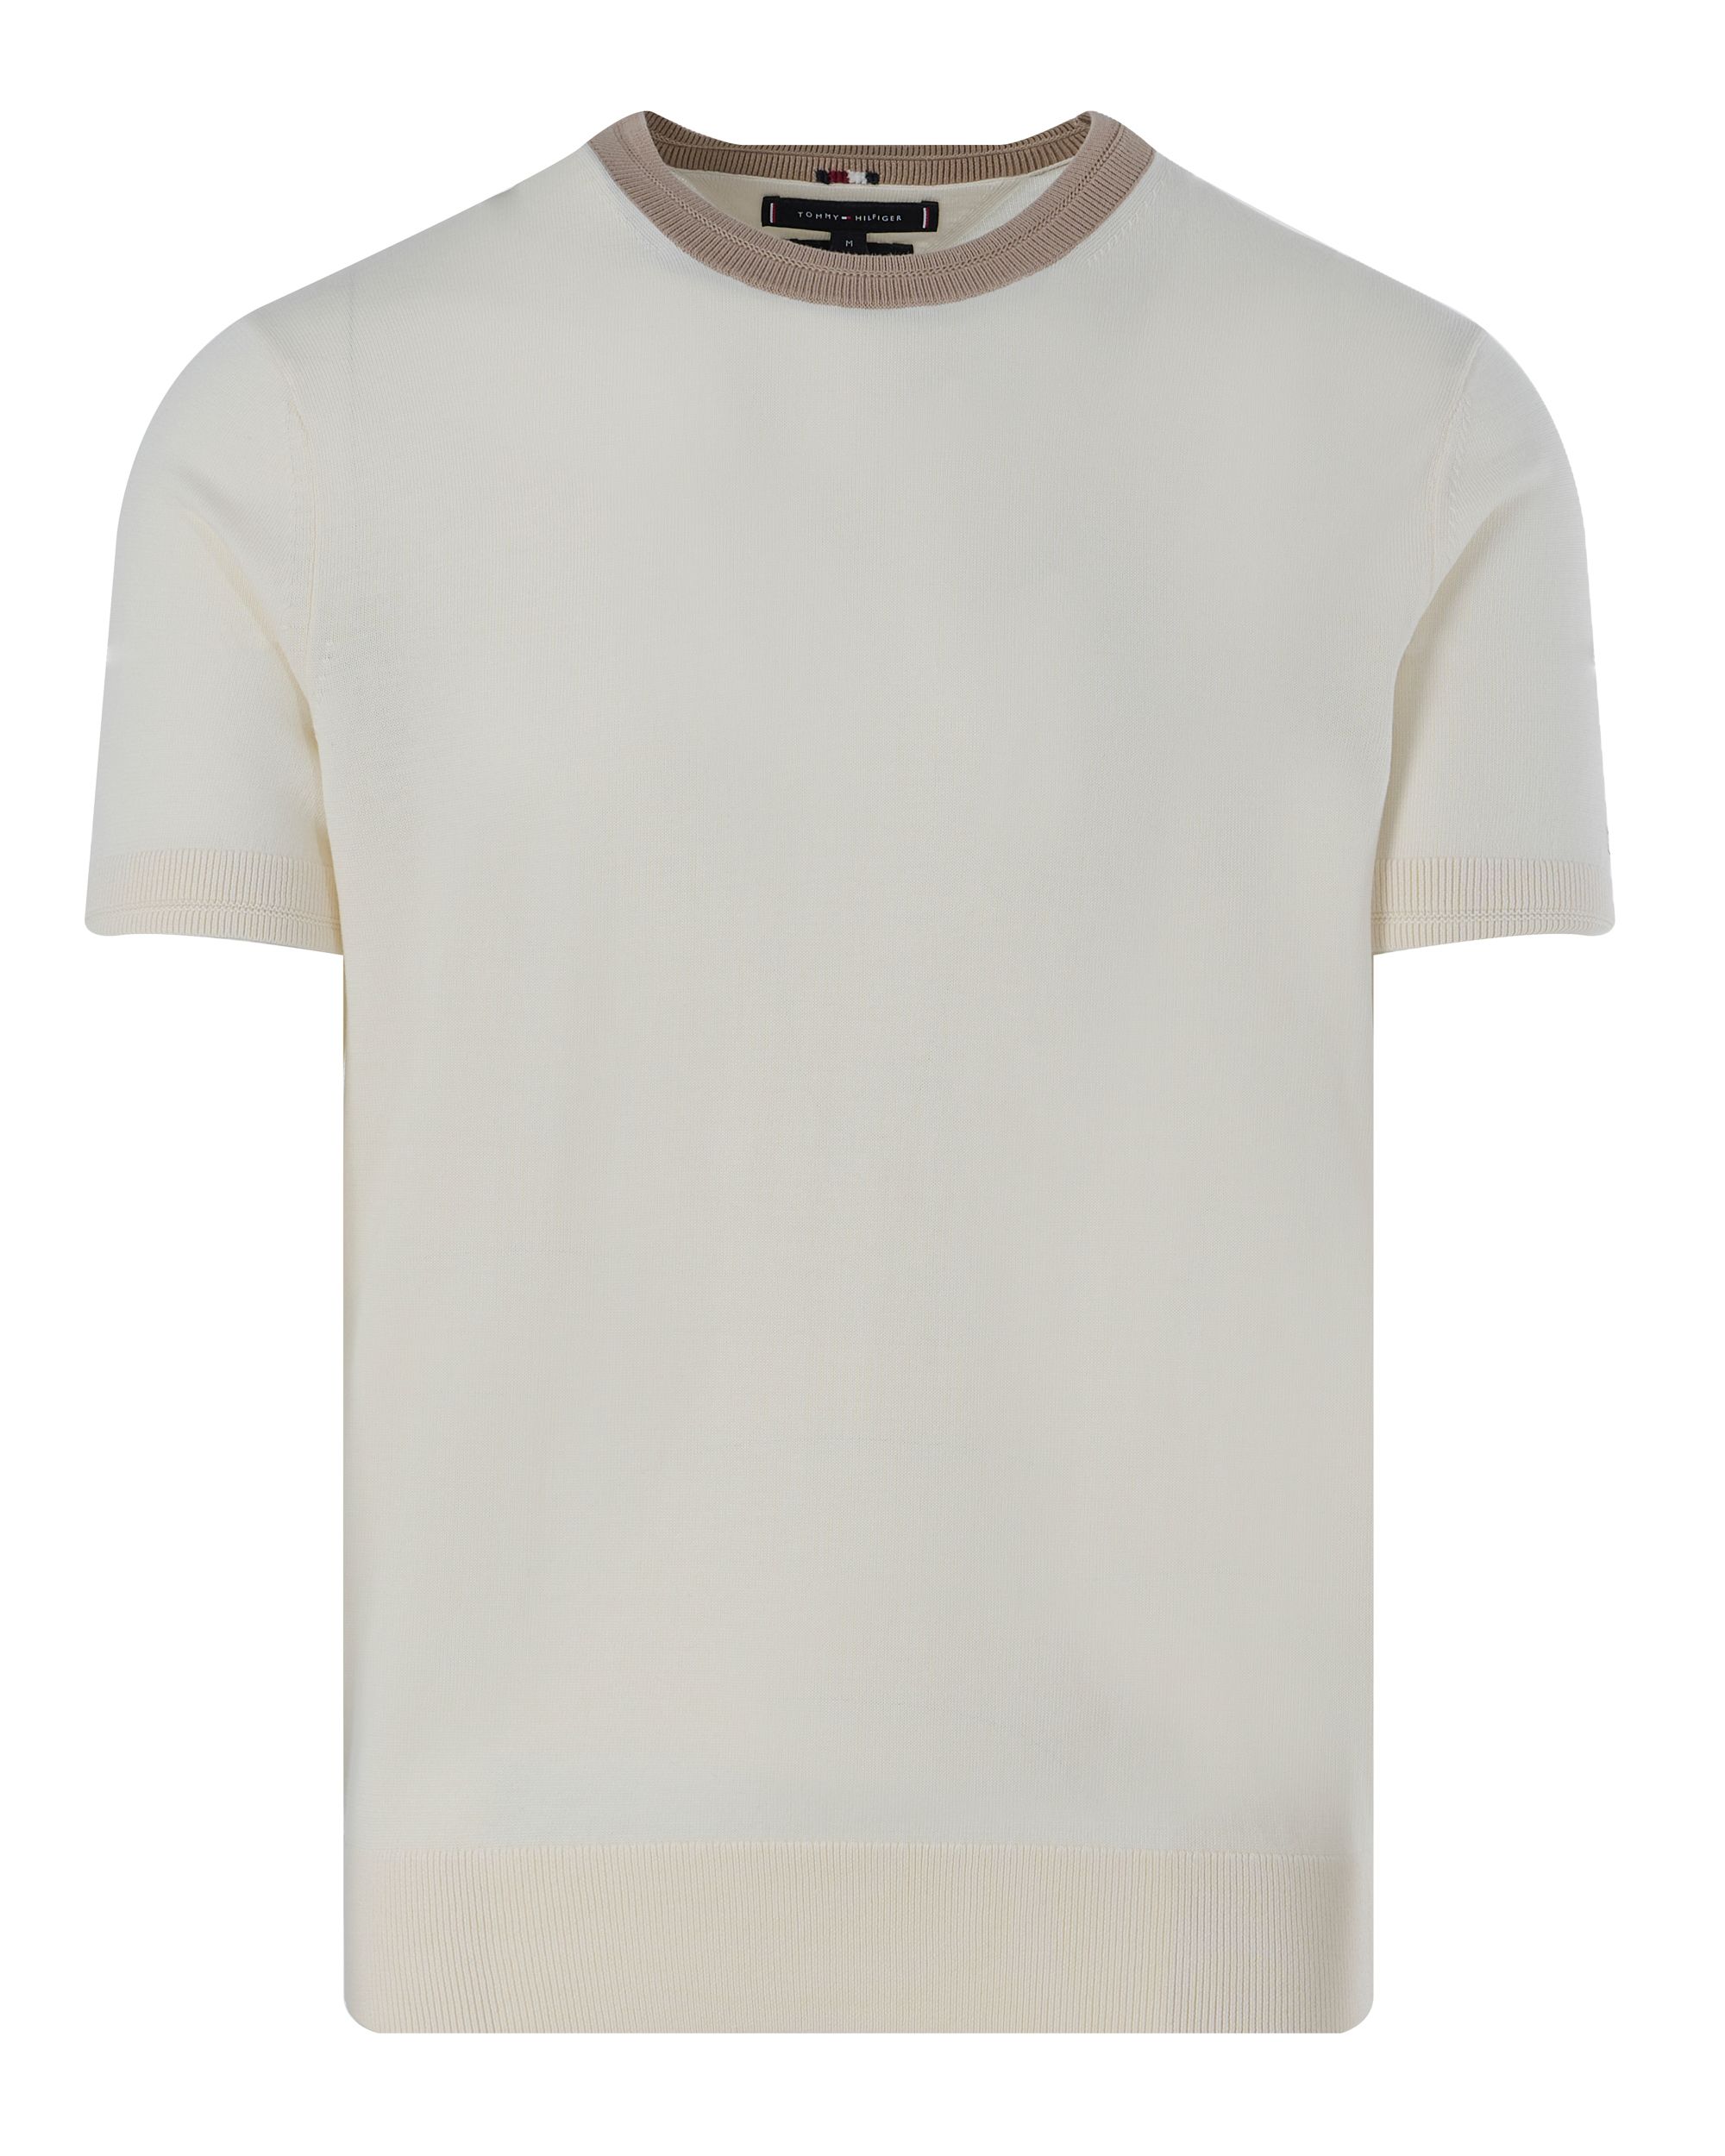 Tommy Hilfiger Menswear T-shirt KM Beige 094635-001-L